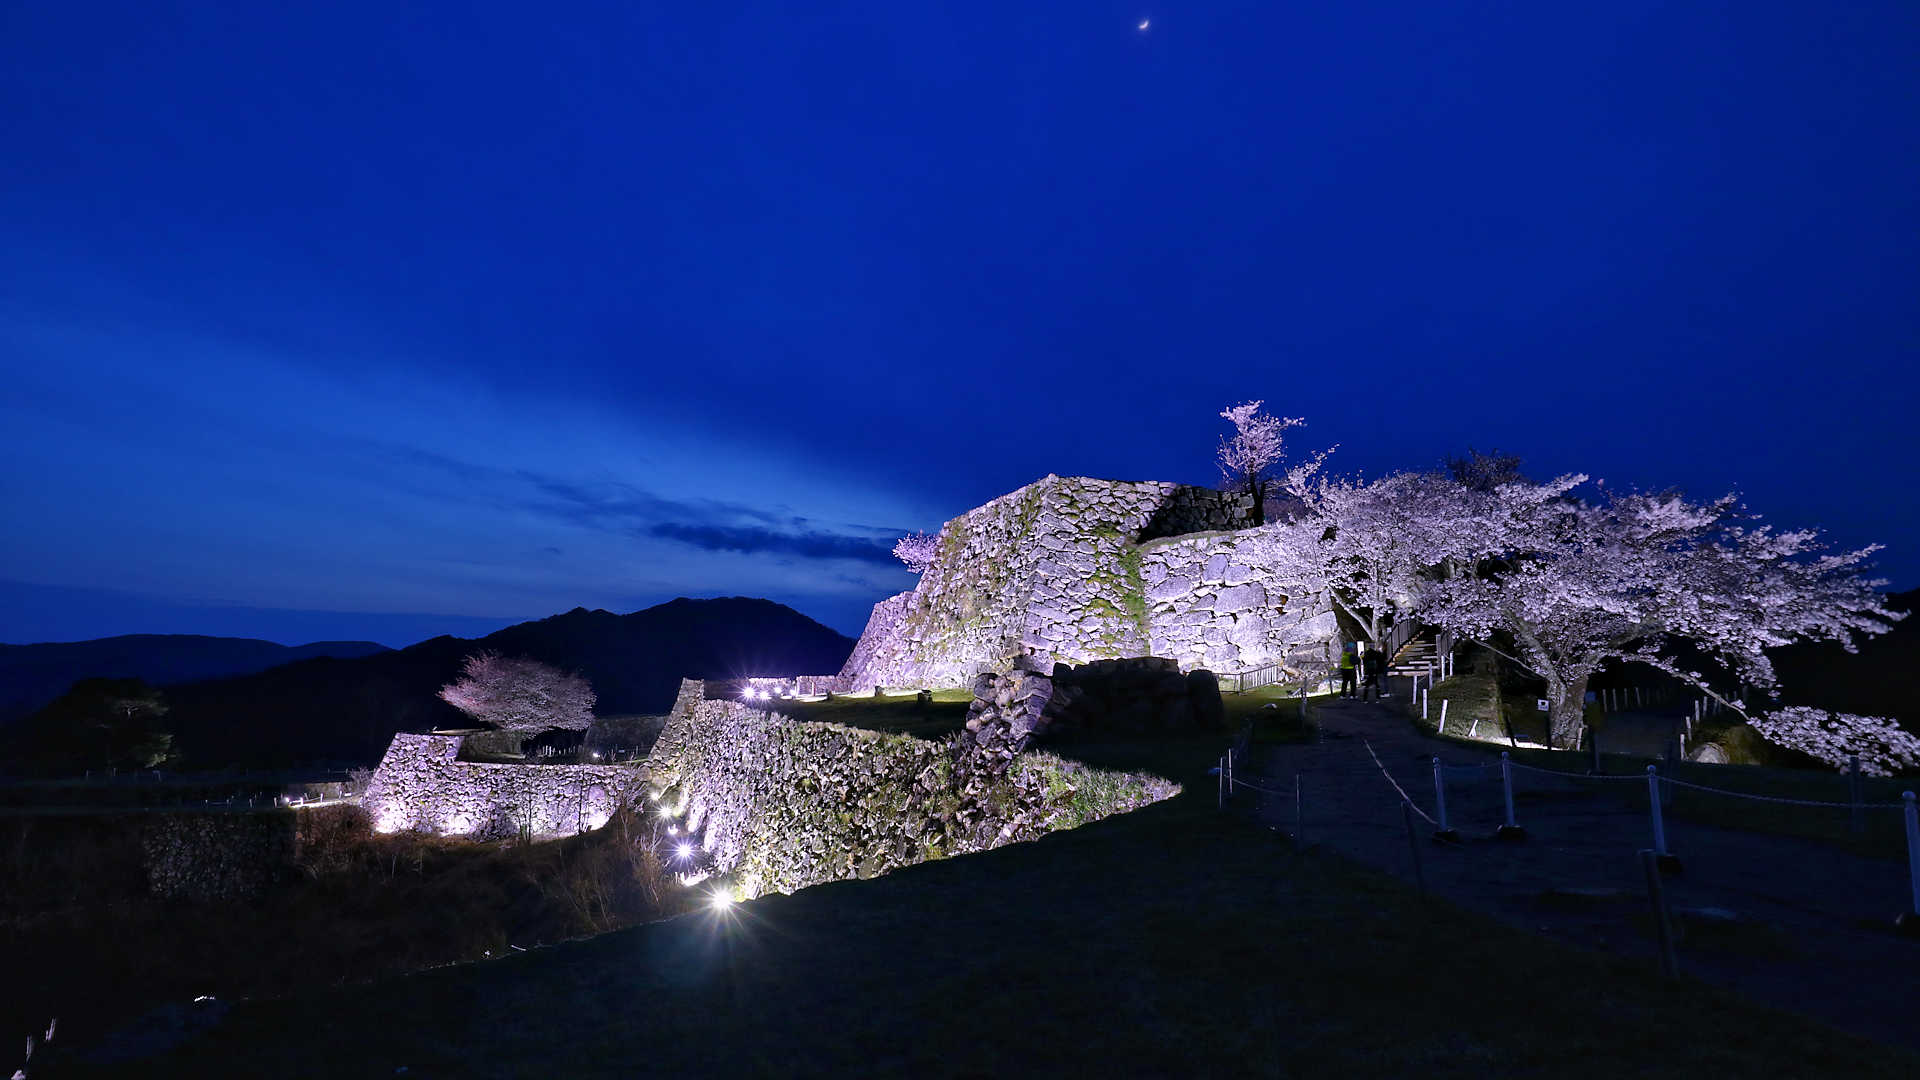 竹田城跡 夜桜ライトアップ 桜の見頃にあわせて観覧時間を夜間まで延長